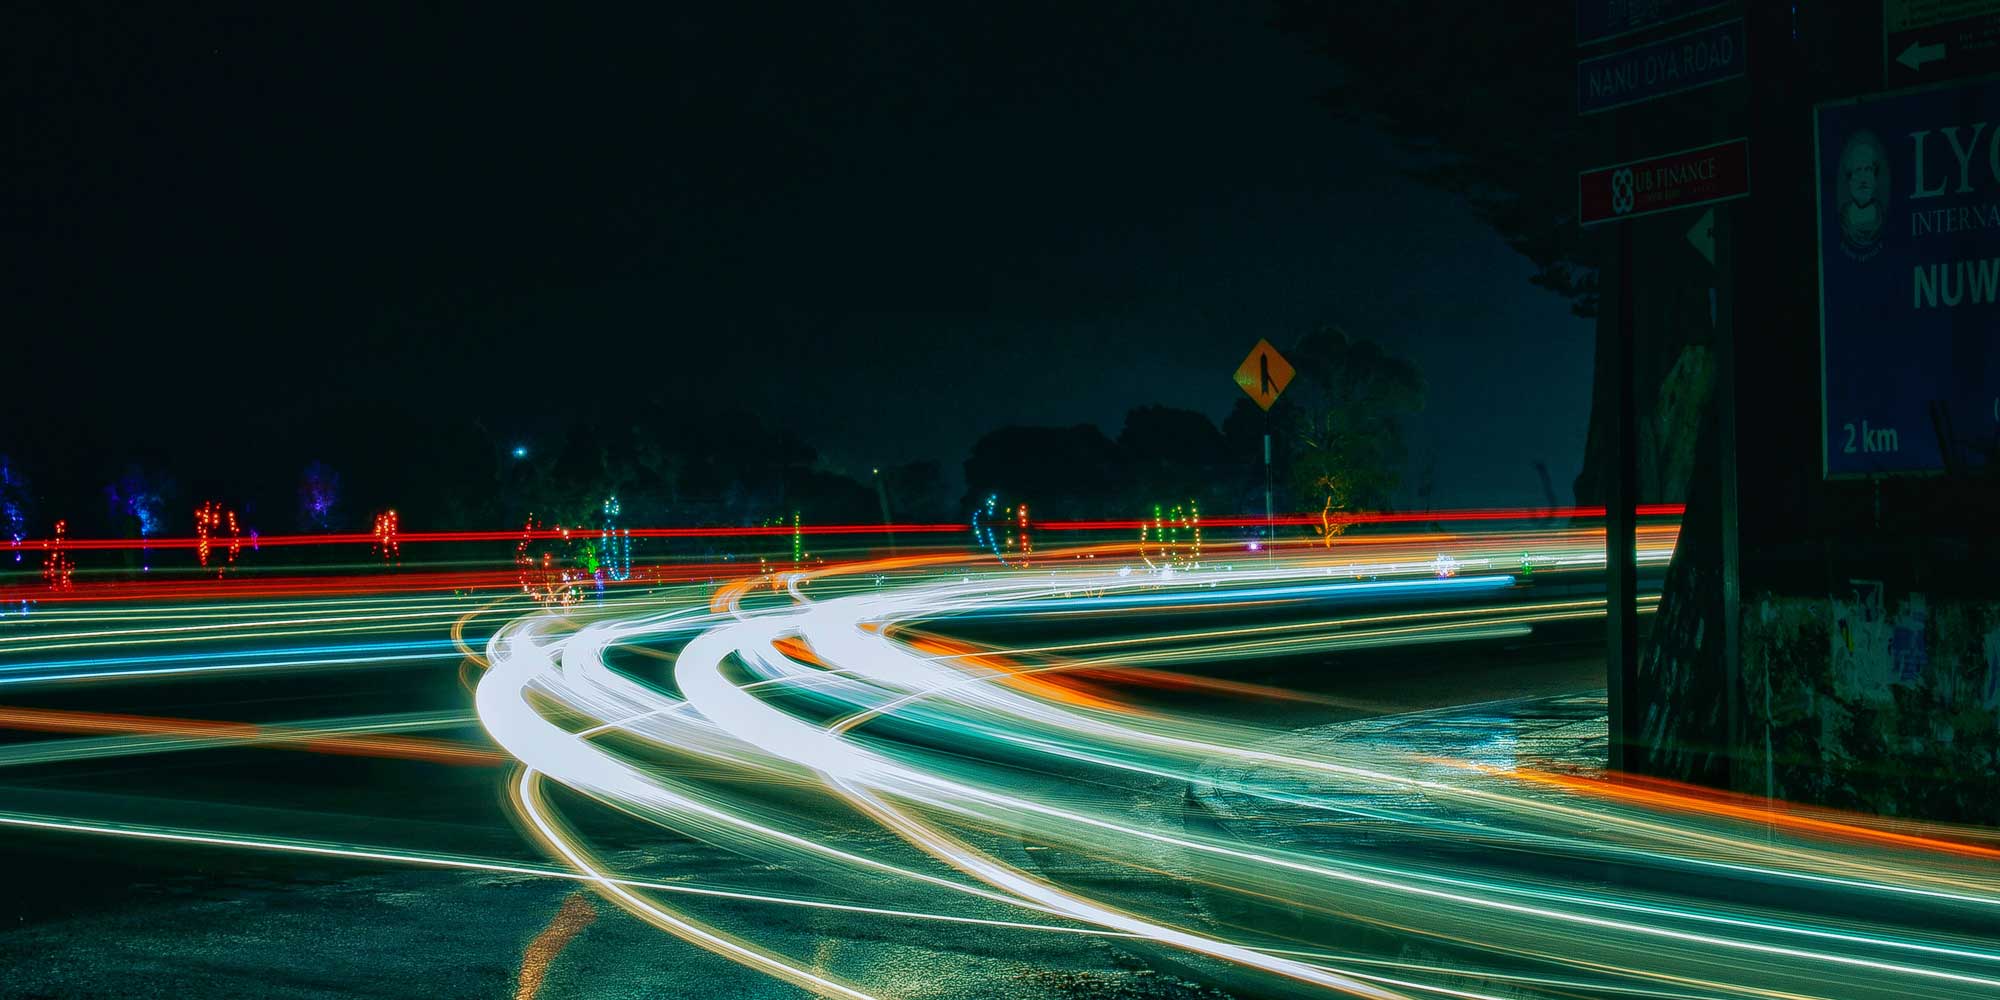 Nocne ujęcie skrzyżowania dróg, na którym tylko światła przejeżdżających samochodów można rozpoznać jako linie.